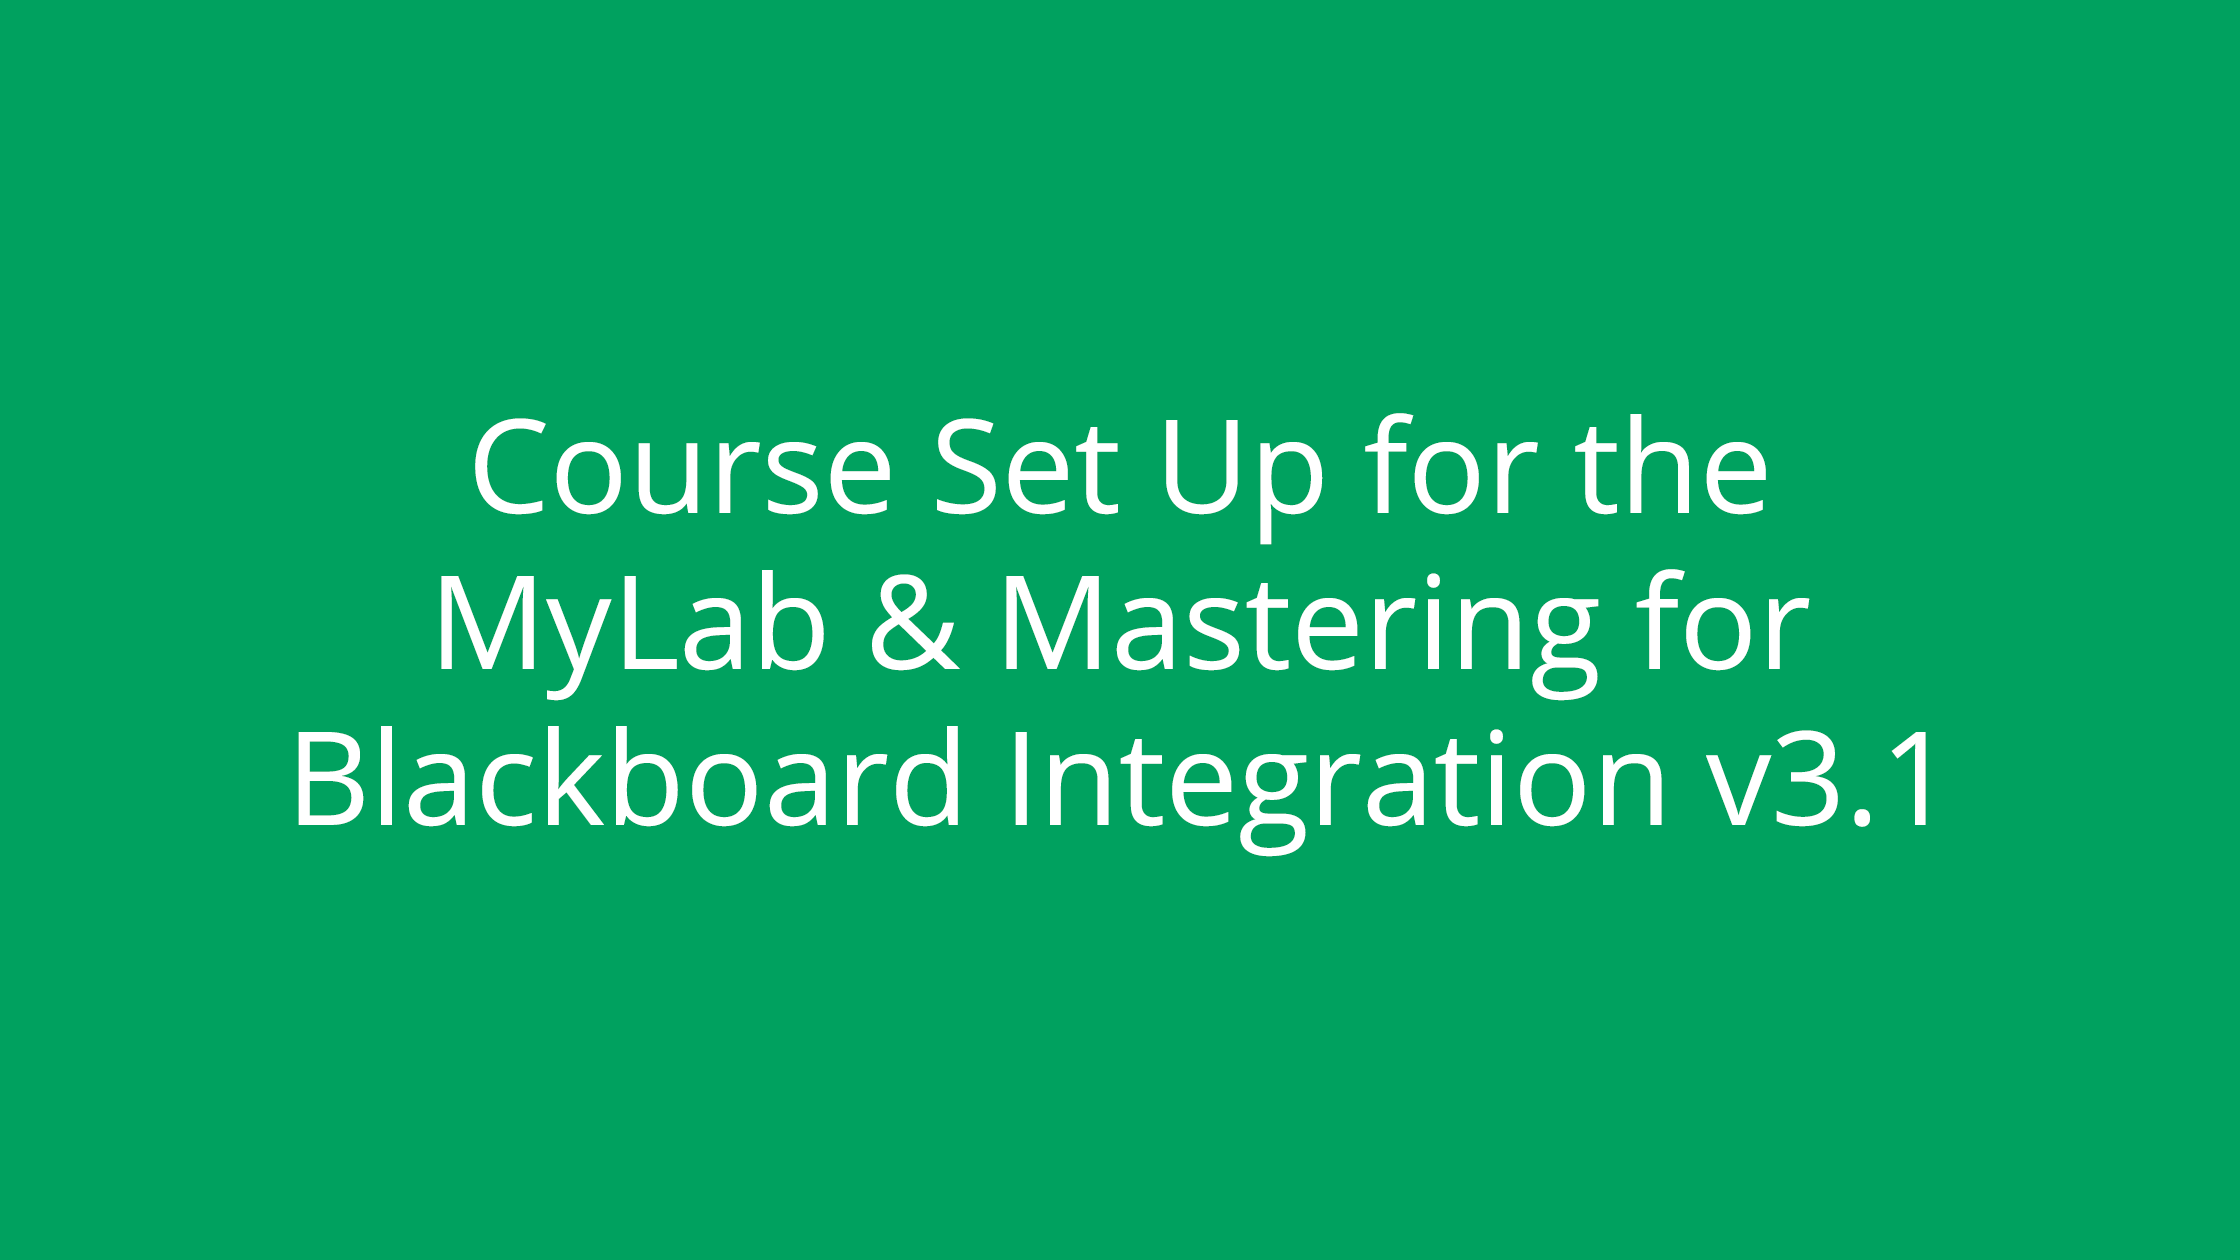 Course Set Up for the MyLab & Mastering for Blackboard Integration v3.1